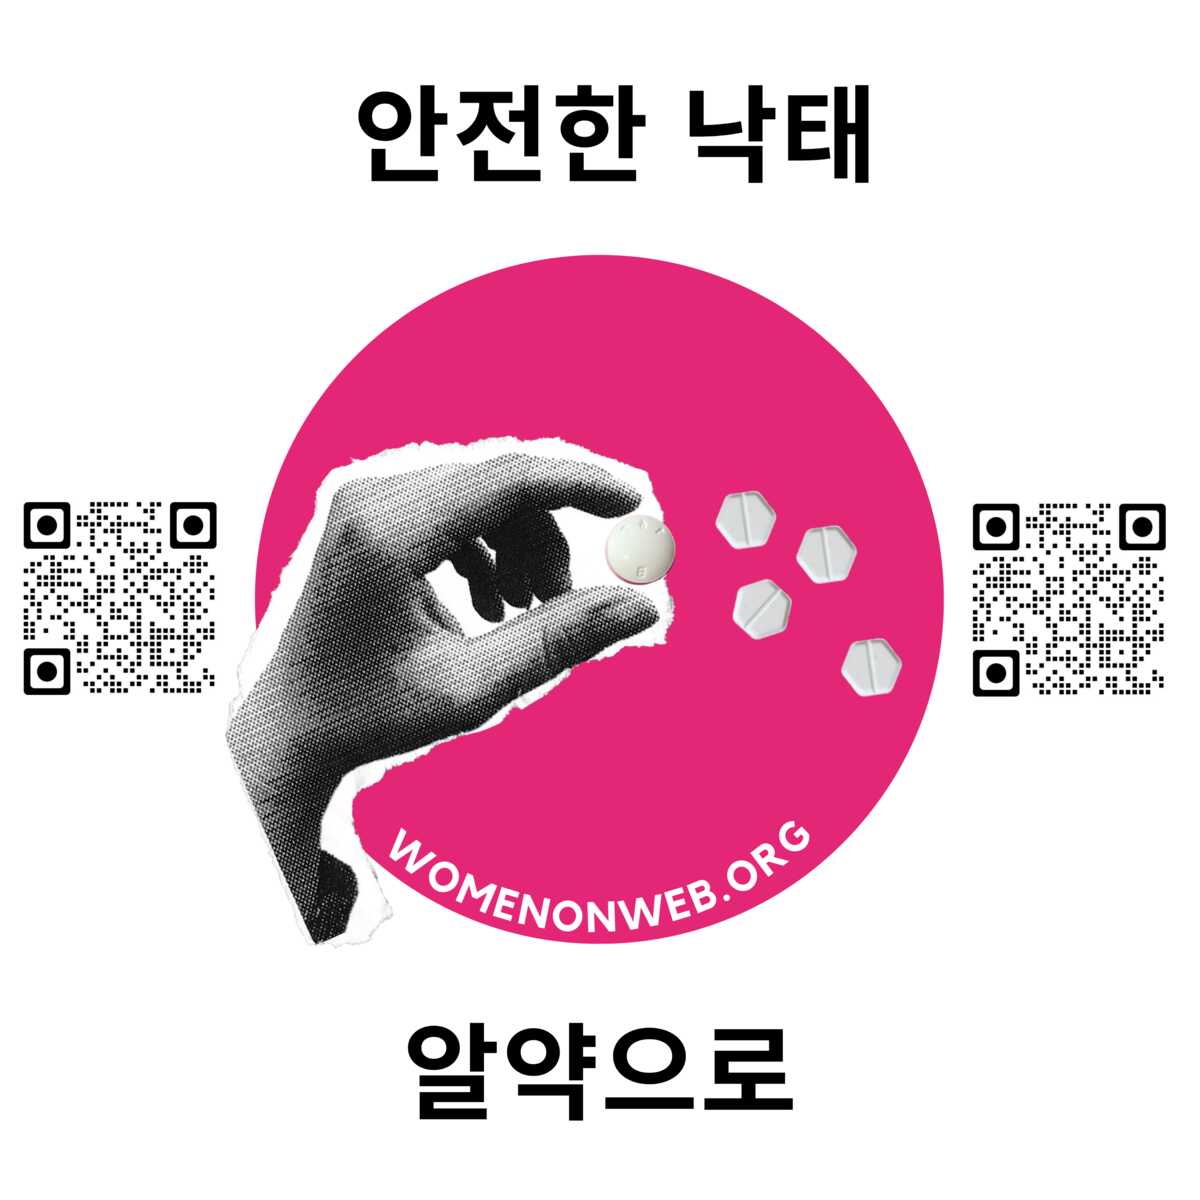 Women on Web sticker Korean